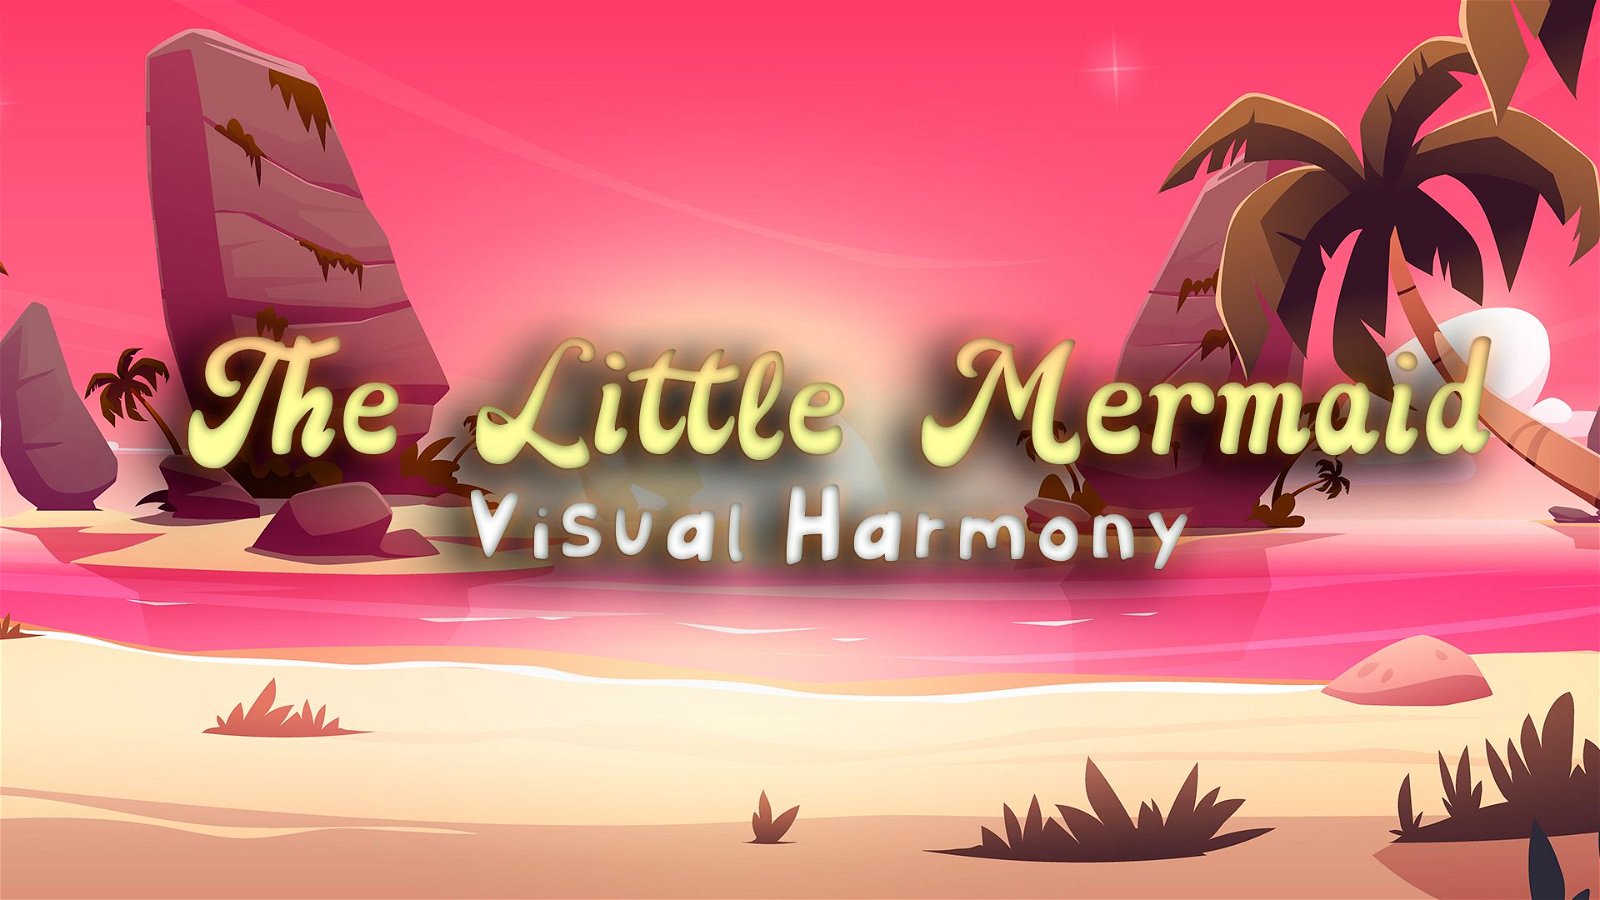 Image of The Little Mermaid: Visual Harmony